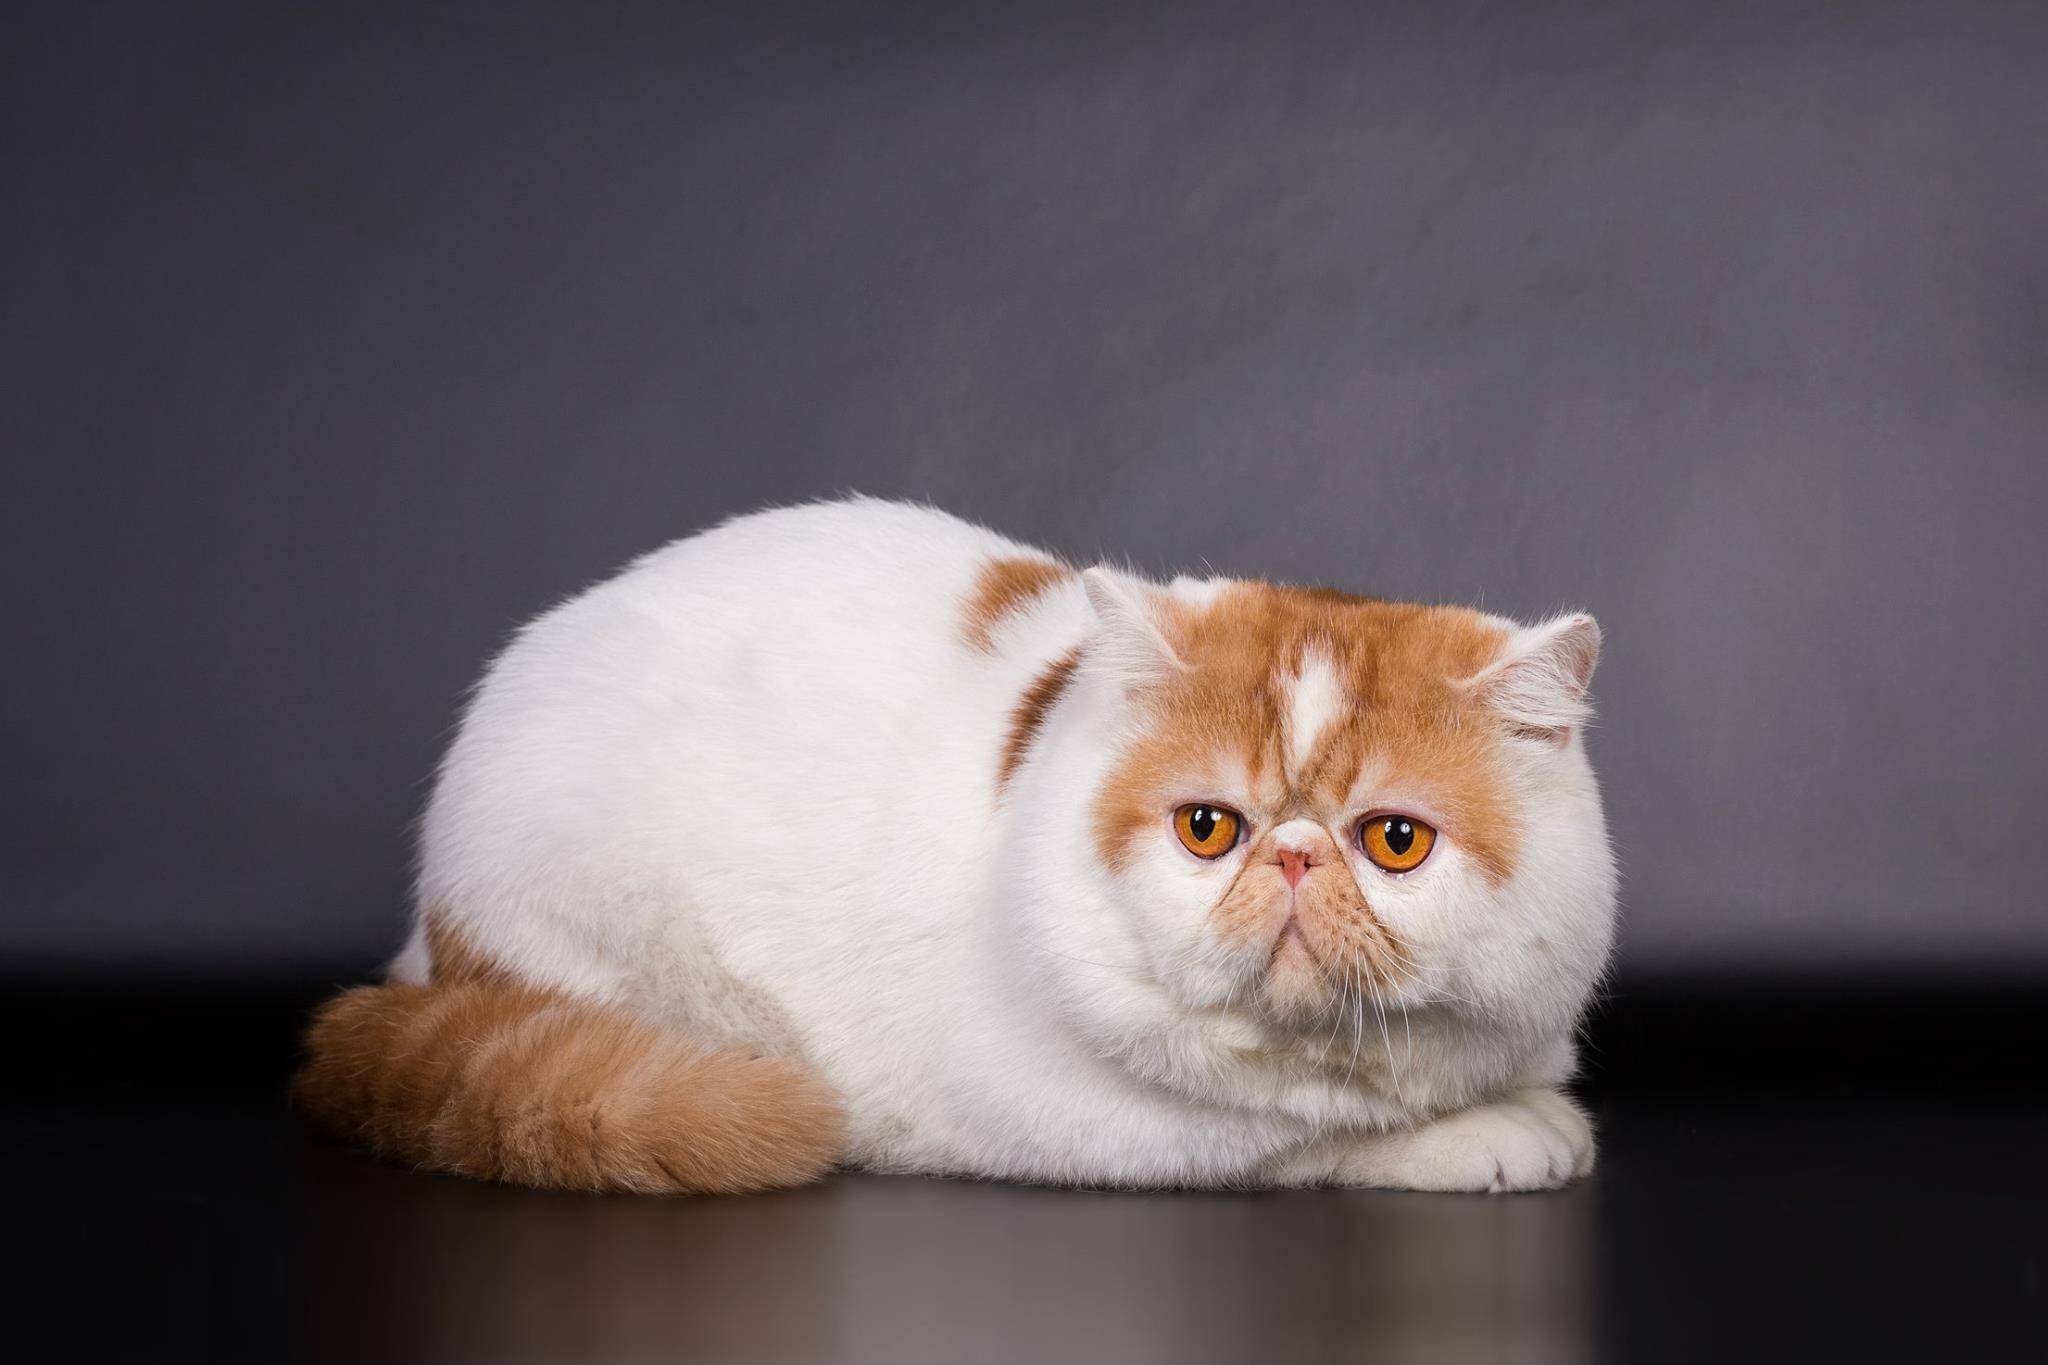 Экзотическая кошка (экзот):описание породы и характера, фото